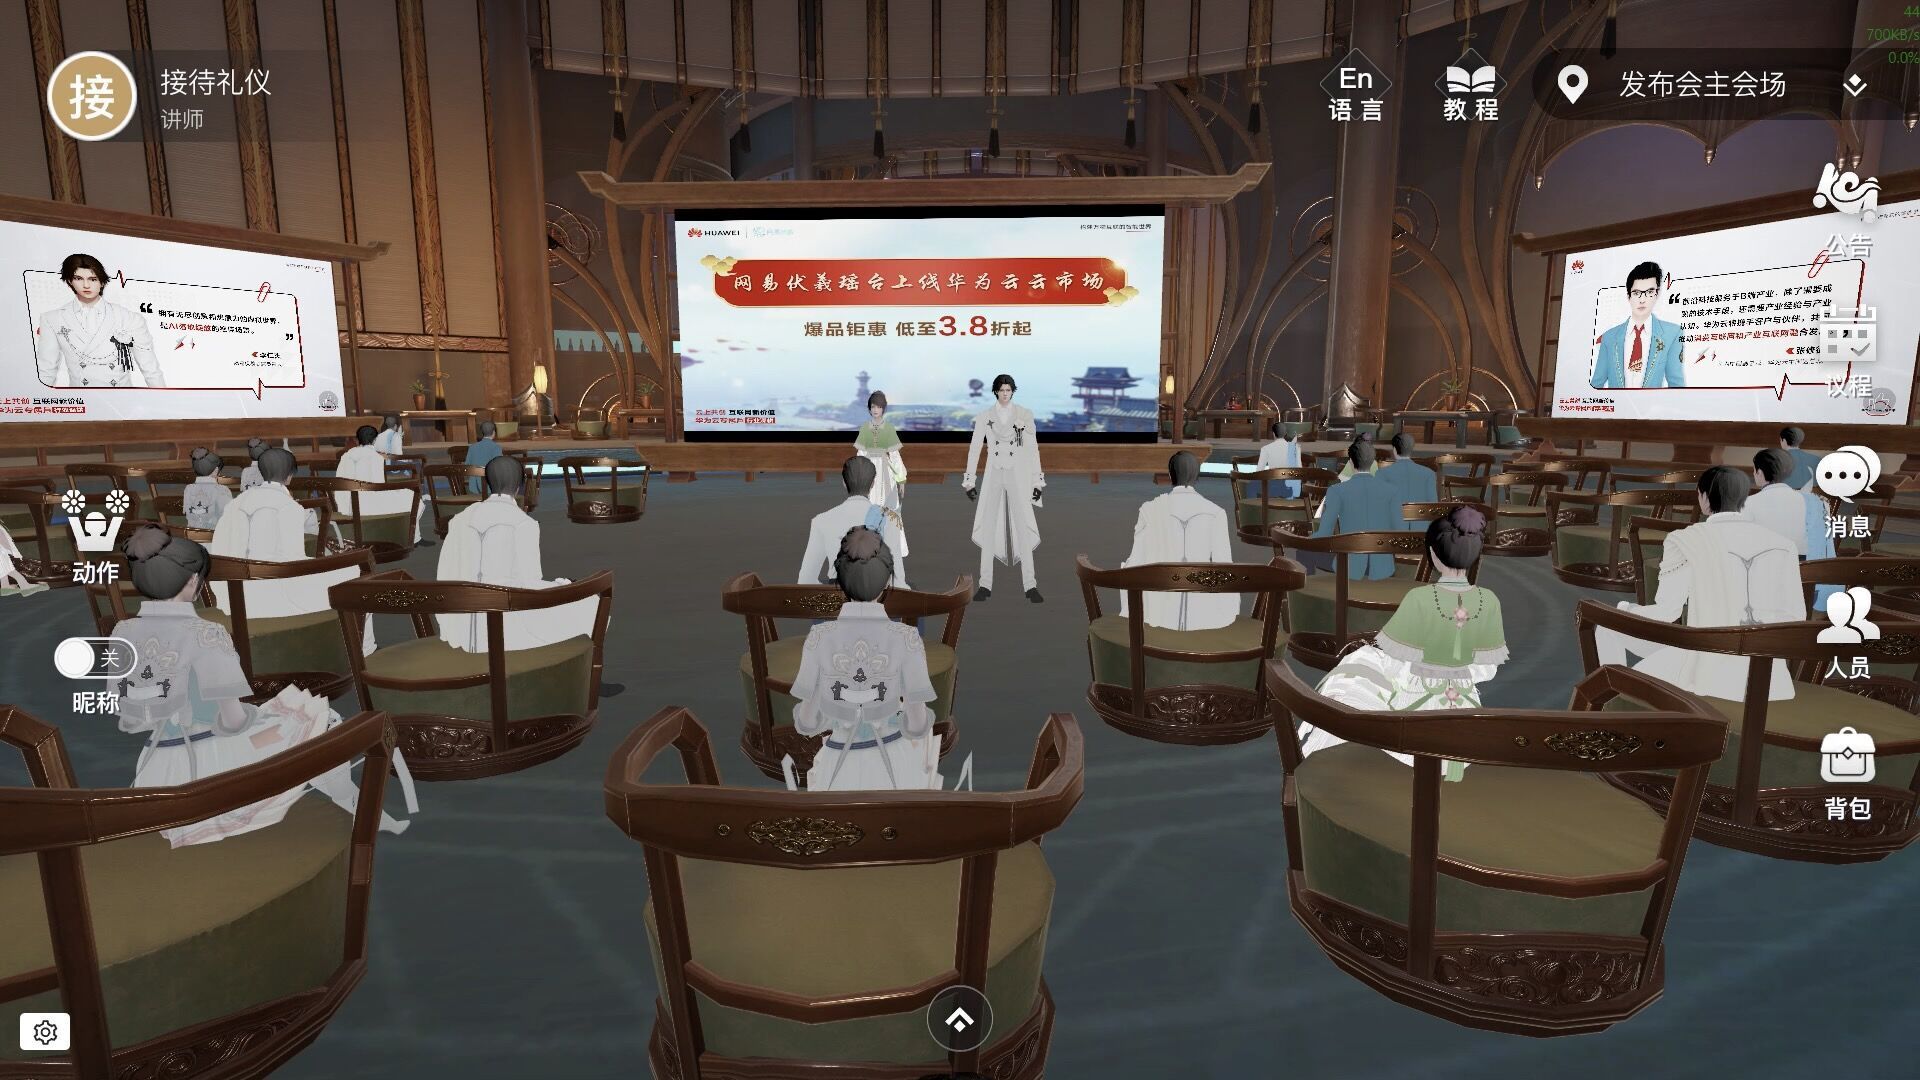 图片展示了一个虚拟现实场景，多位用户的虚拟形象坐在会议室内，聚焦于前方的演讲者和大屏幕上的演示内容。